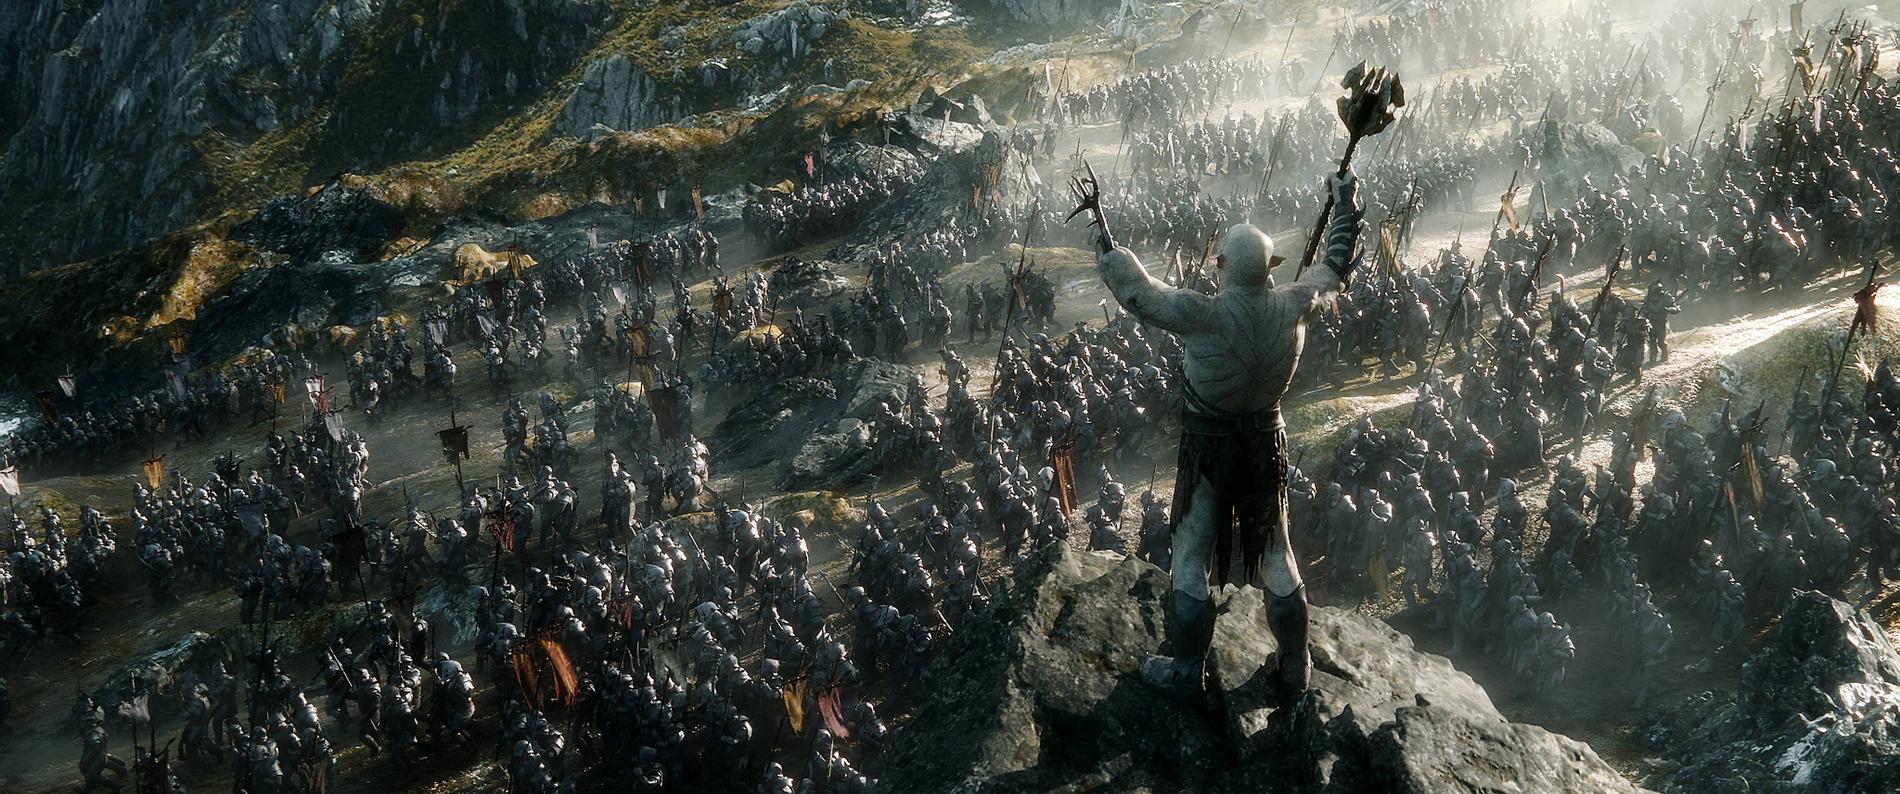 STORSLAGET Orchledaren Azog Smutsaren ser ut över sina legioner. ”Hobbit: Femhäradslaget” har en del ordentligt mörka scener att rysa åt. Men den sista delen av Peter Jacksons trilogi innehåller även berörande och känsloladdade scener.